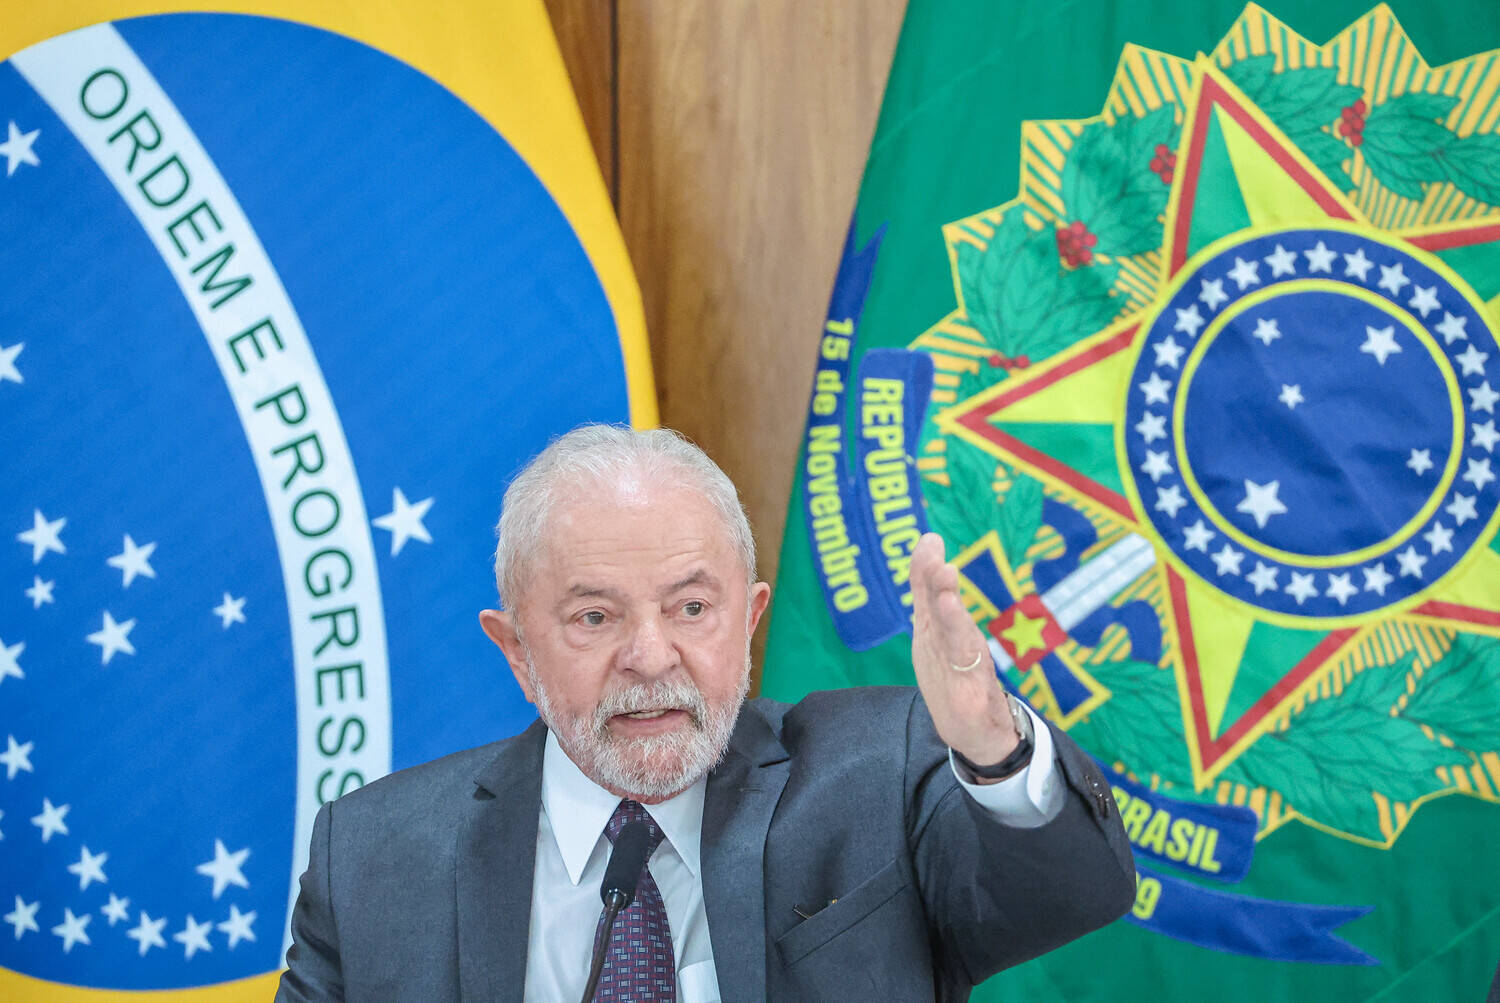 O presidente da República, Luiz Inácio Lula da Silva (PT)